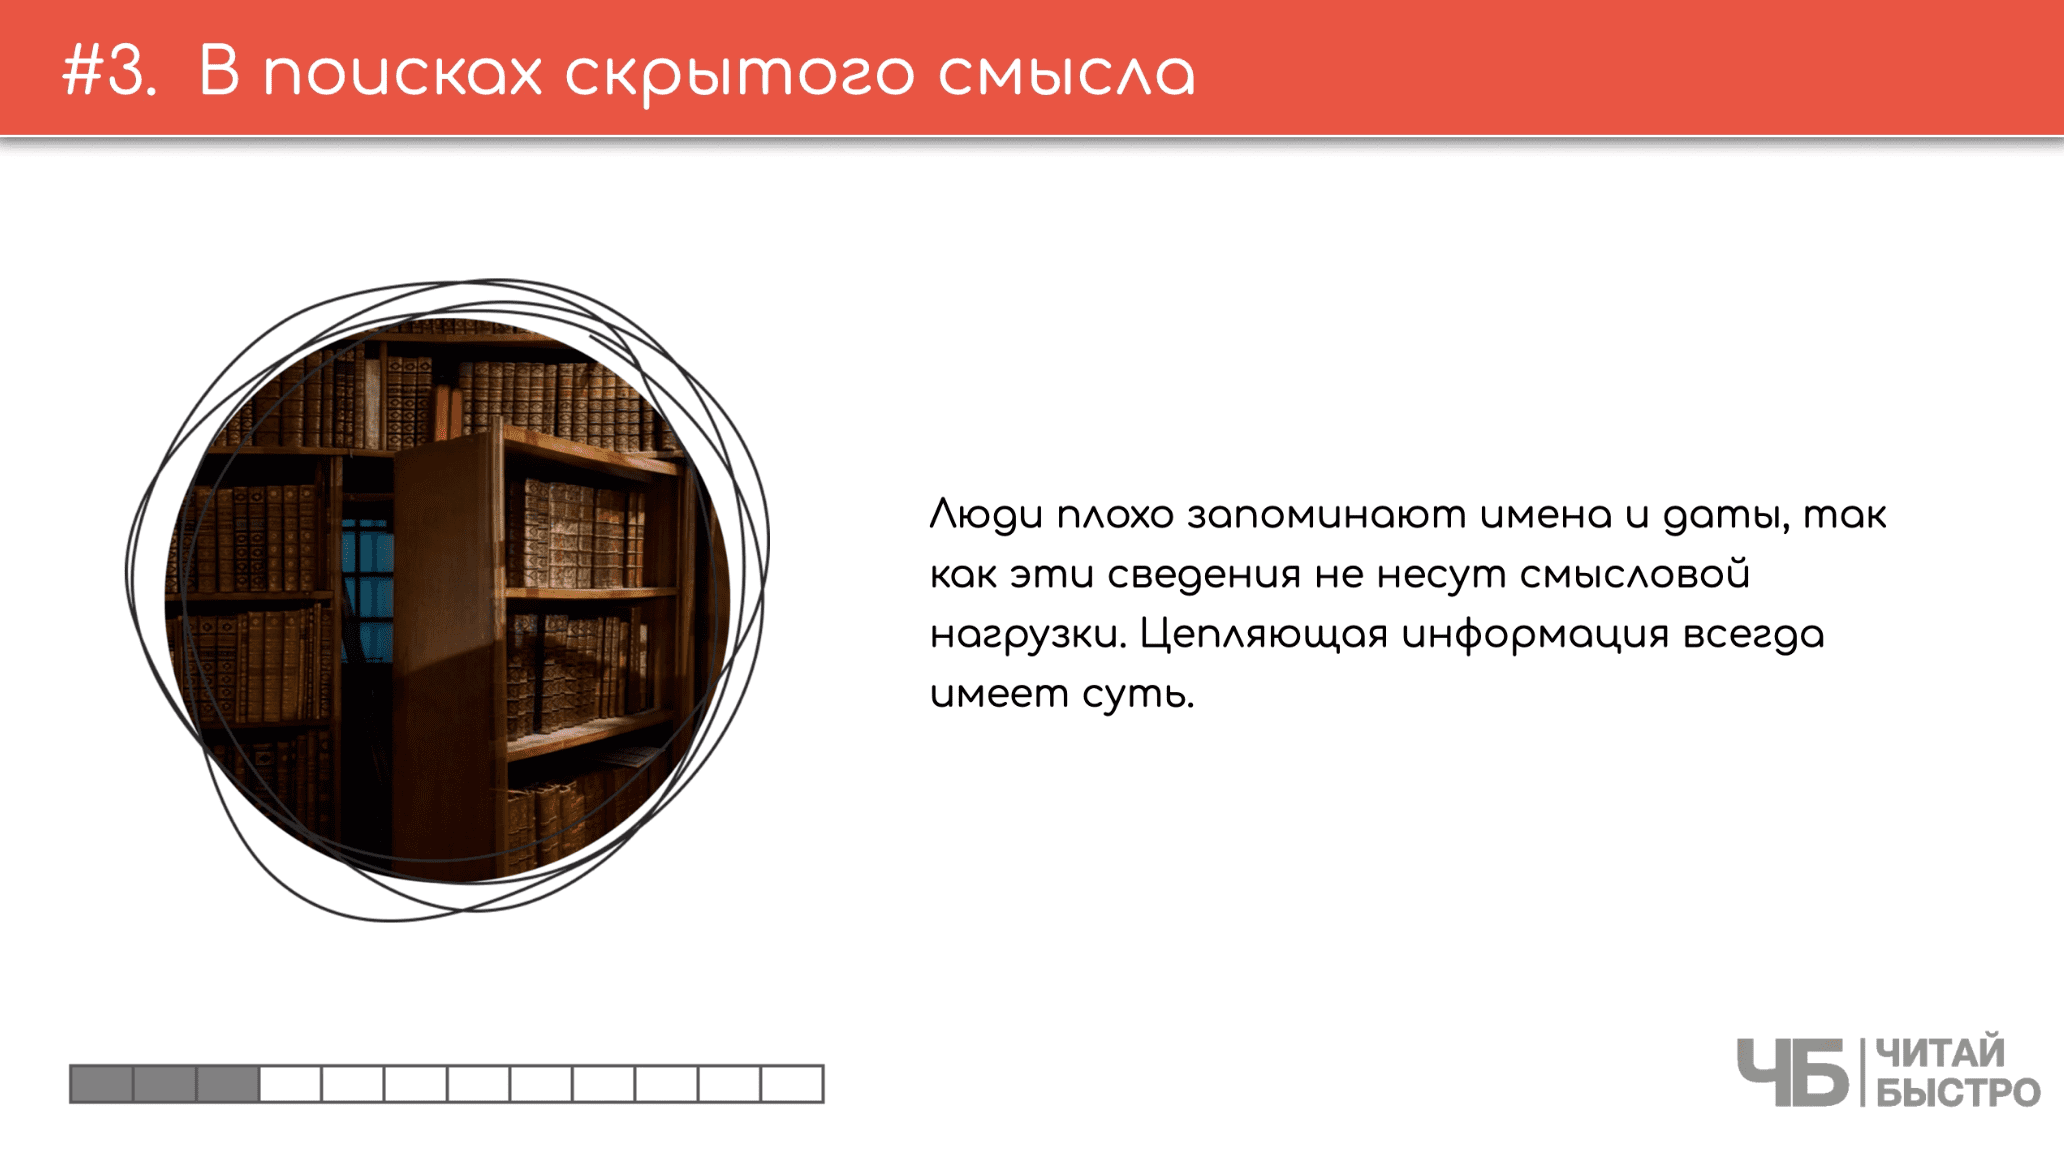 На этом слайде изображен тезис о поисках скрытого смысла и иллюстрация книжных полок.